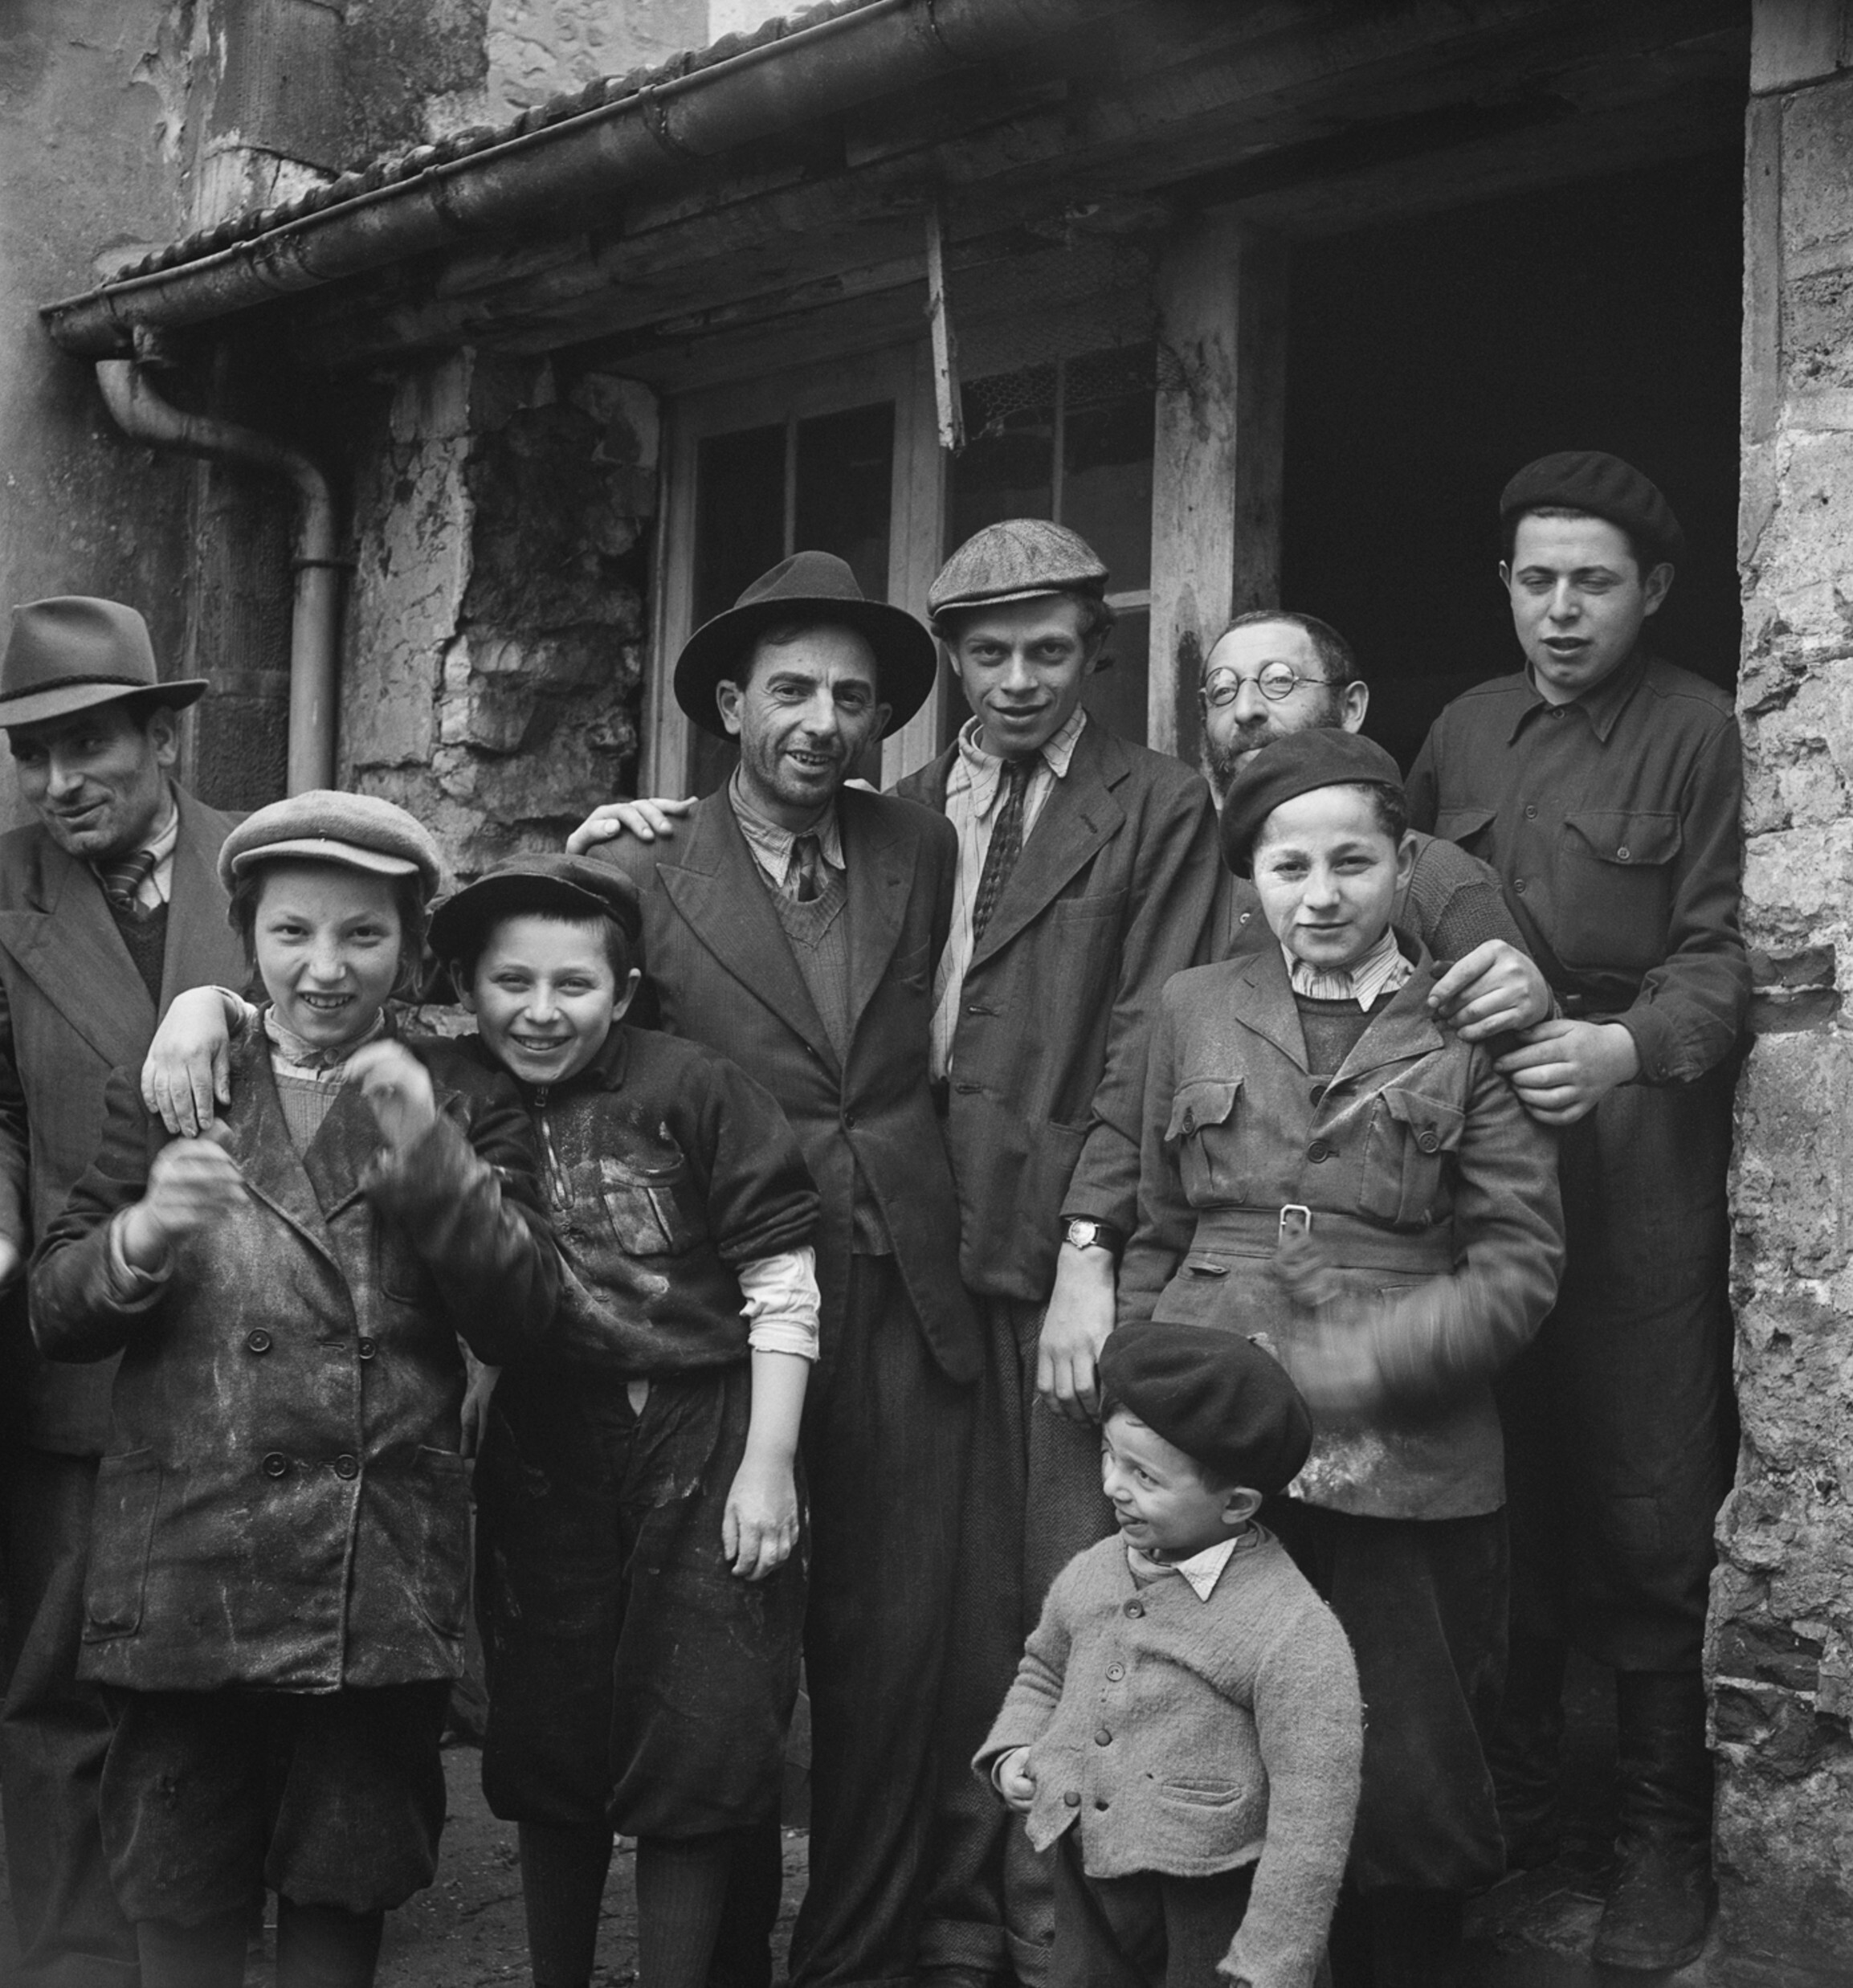 Выжившие после Холокоста собираются возле здания, где готовится маца в рамках подготовки к празднику Песах, лагерь для перемещенных лиц Энонвиль, Пикардия, Франция, 1947 год. Фотограф Роман Вишняк